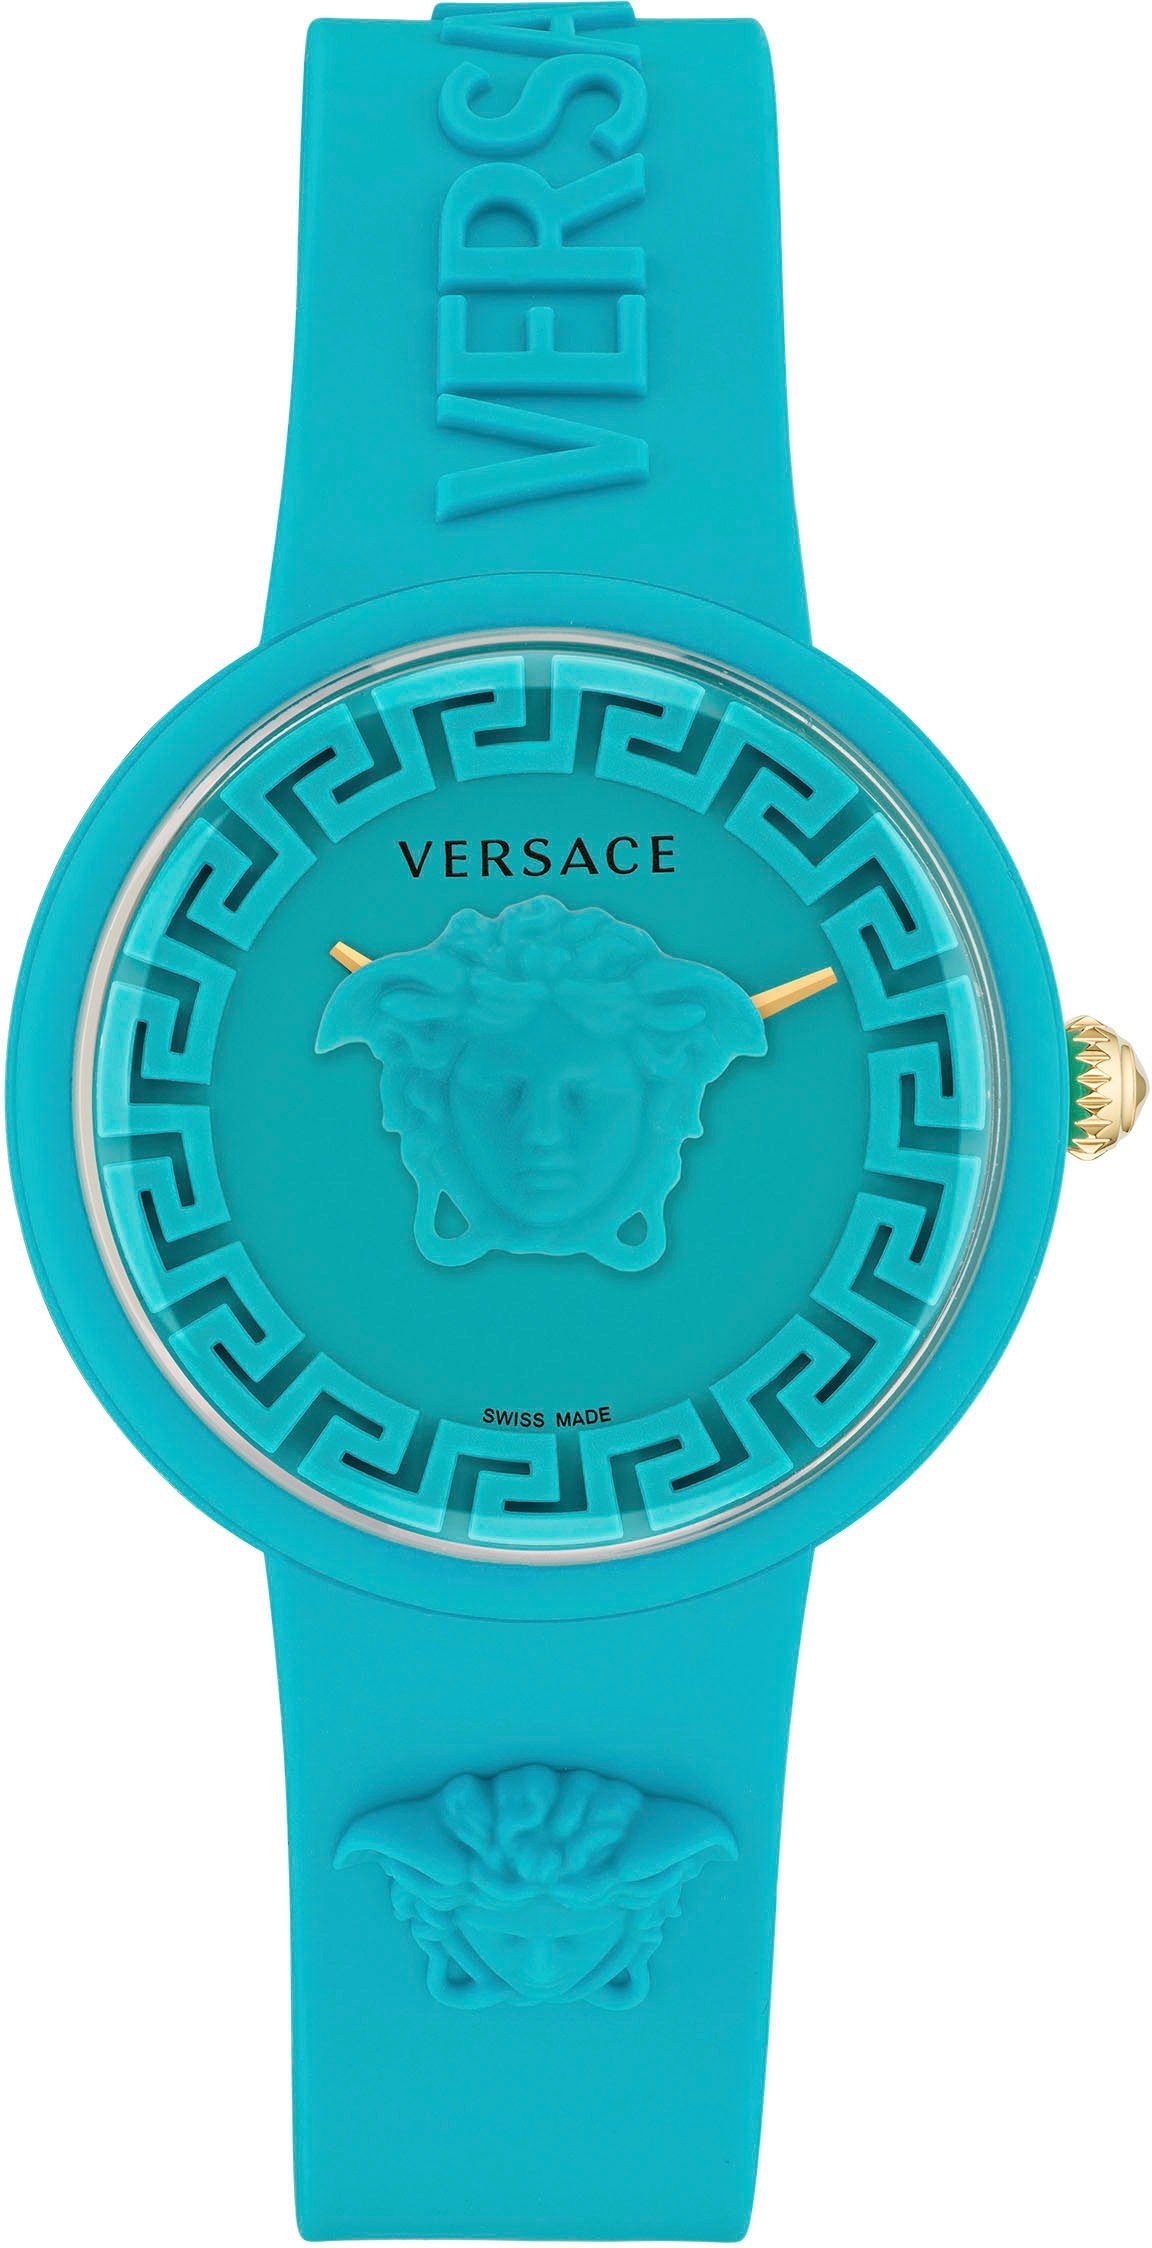 Versace Quarzuhr MEDUSA POP, VE6G00423 türkis | Schweizer Uhren